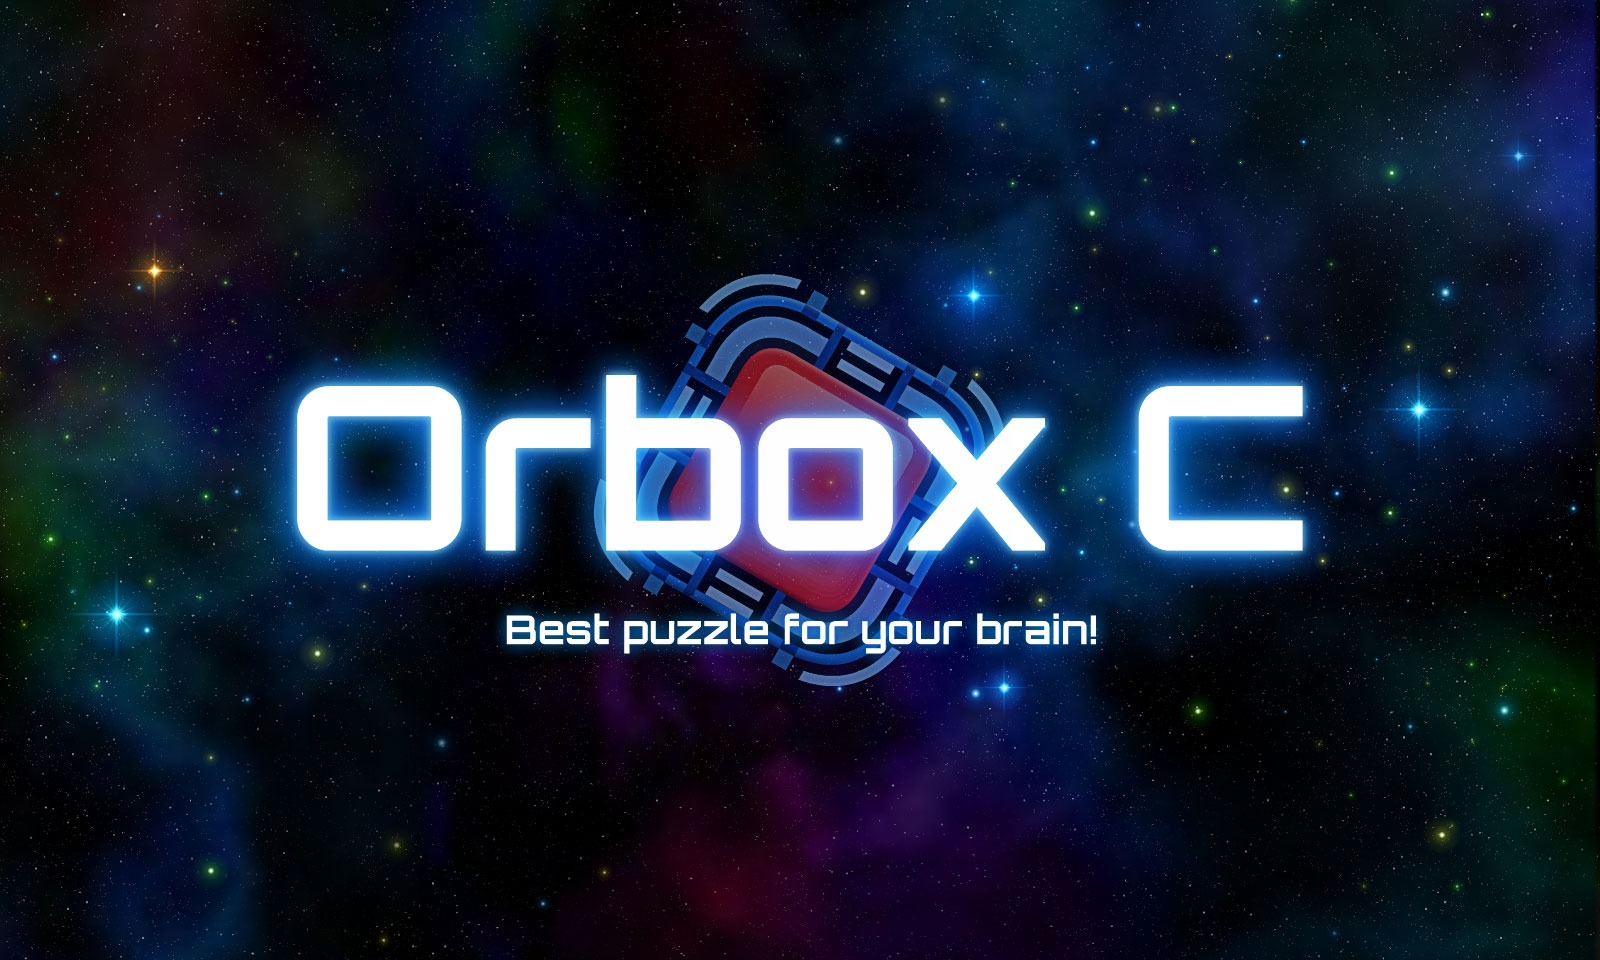 Orbox C (Voucher - Kód ke stažení) (PC)